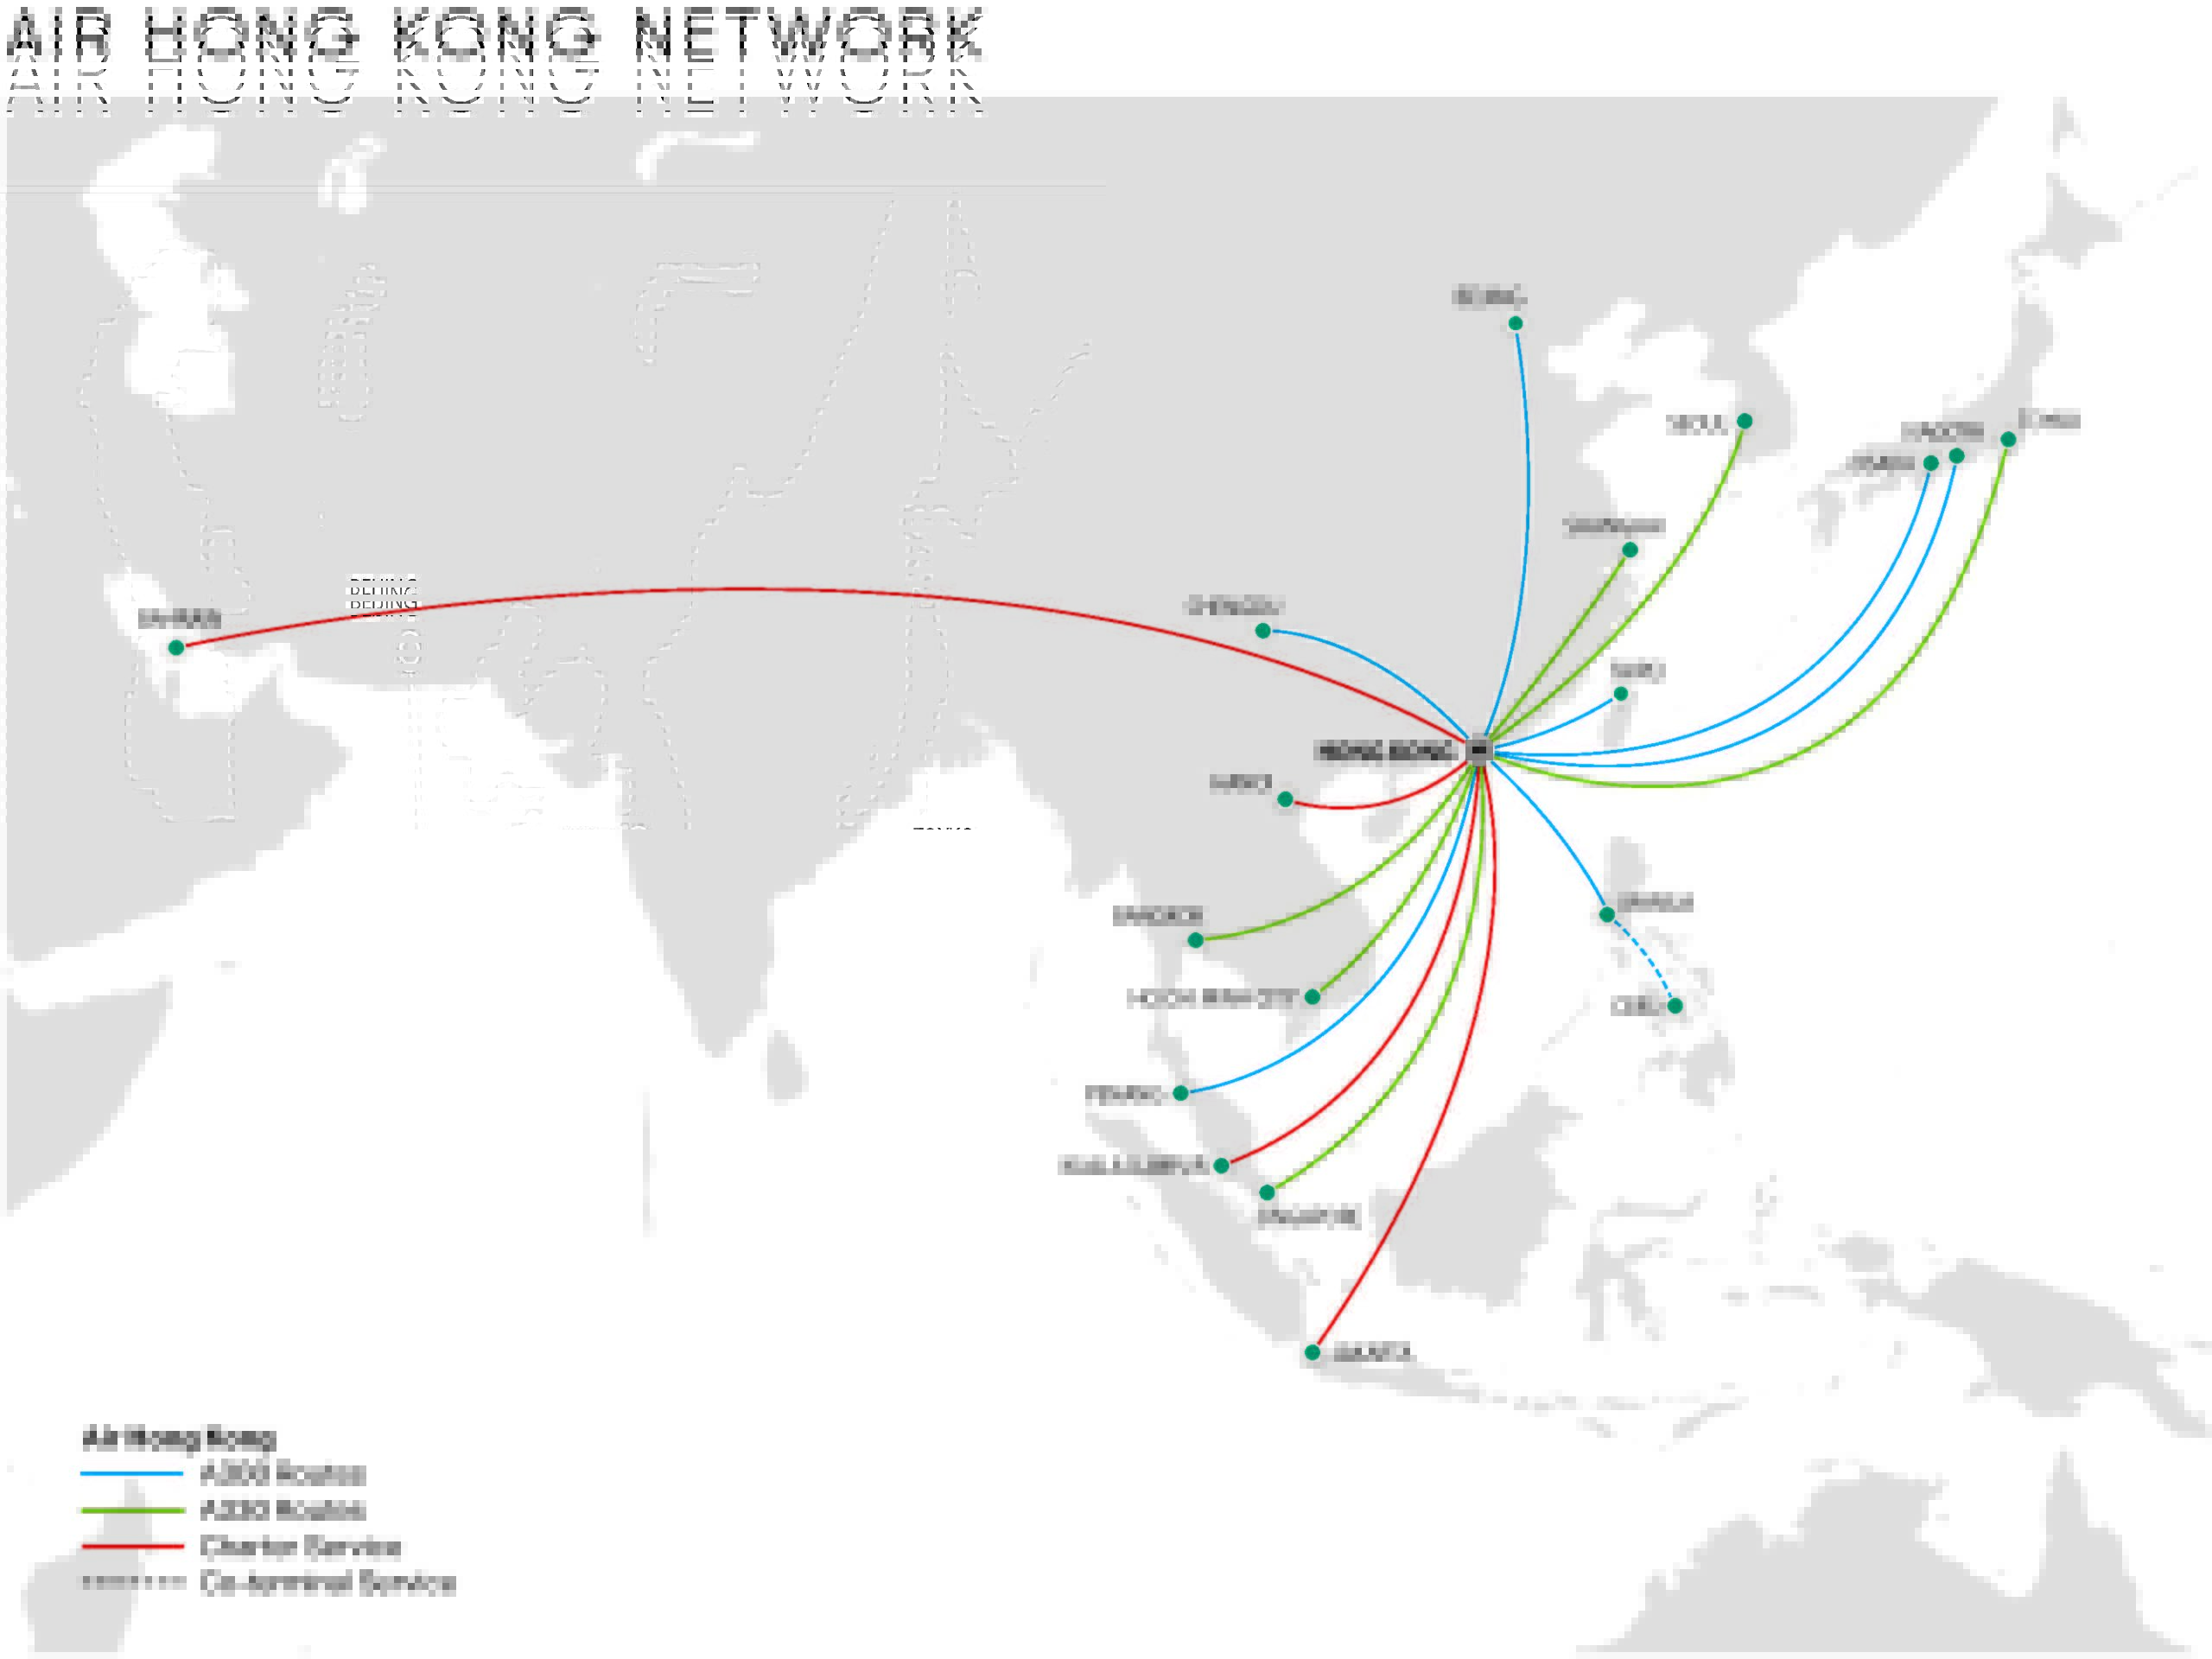 Air Hong Kong network map as of Sep 2022